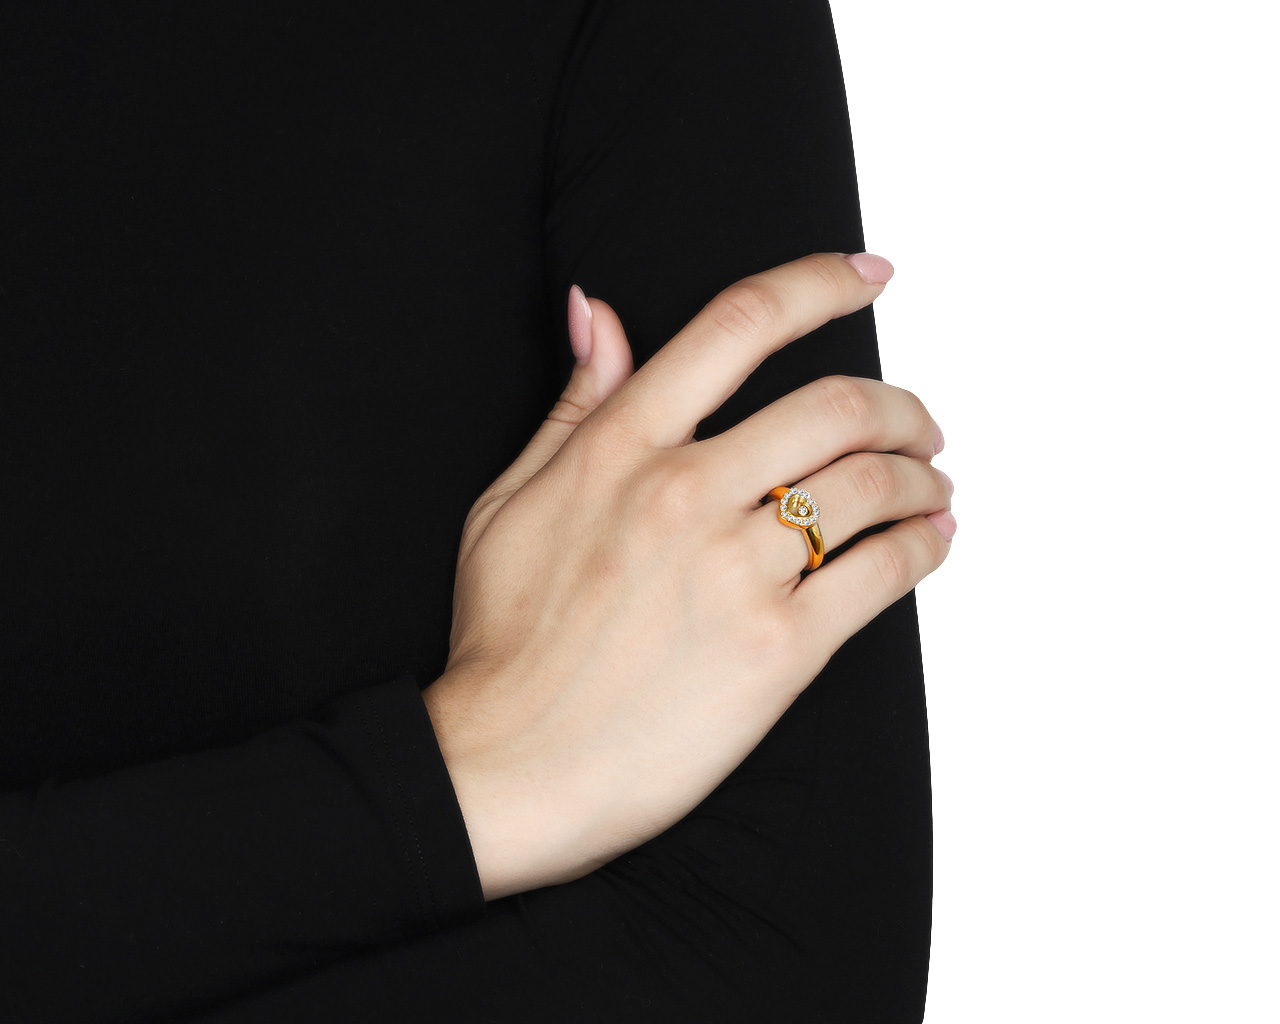 Оригинальное золотое кольцо с бриллиантами 0.23ct Chopard Happy Diamonds